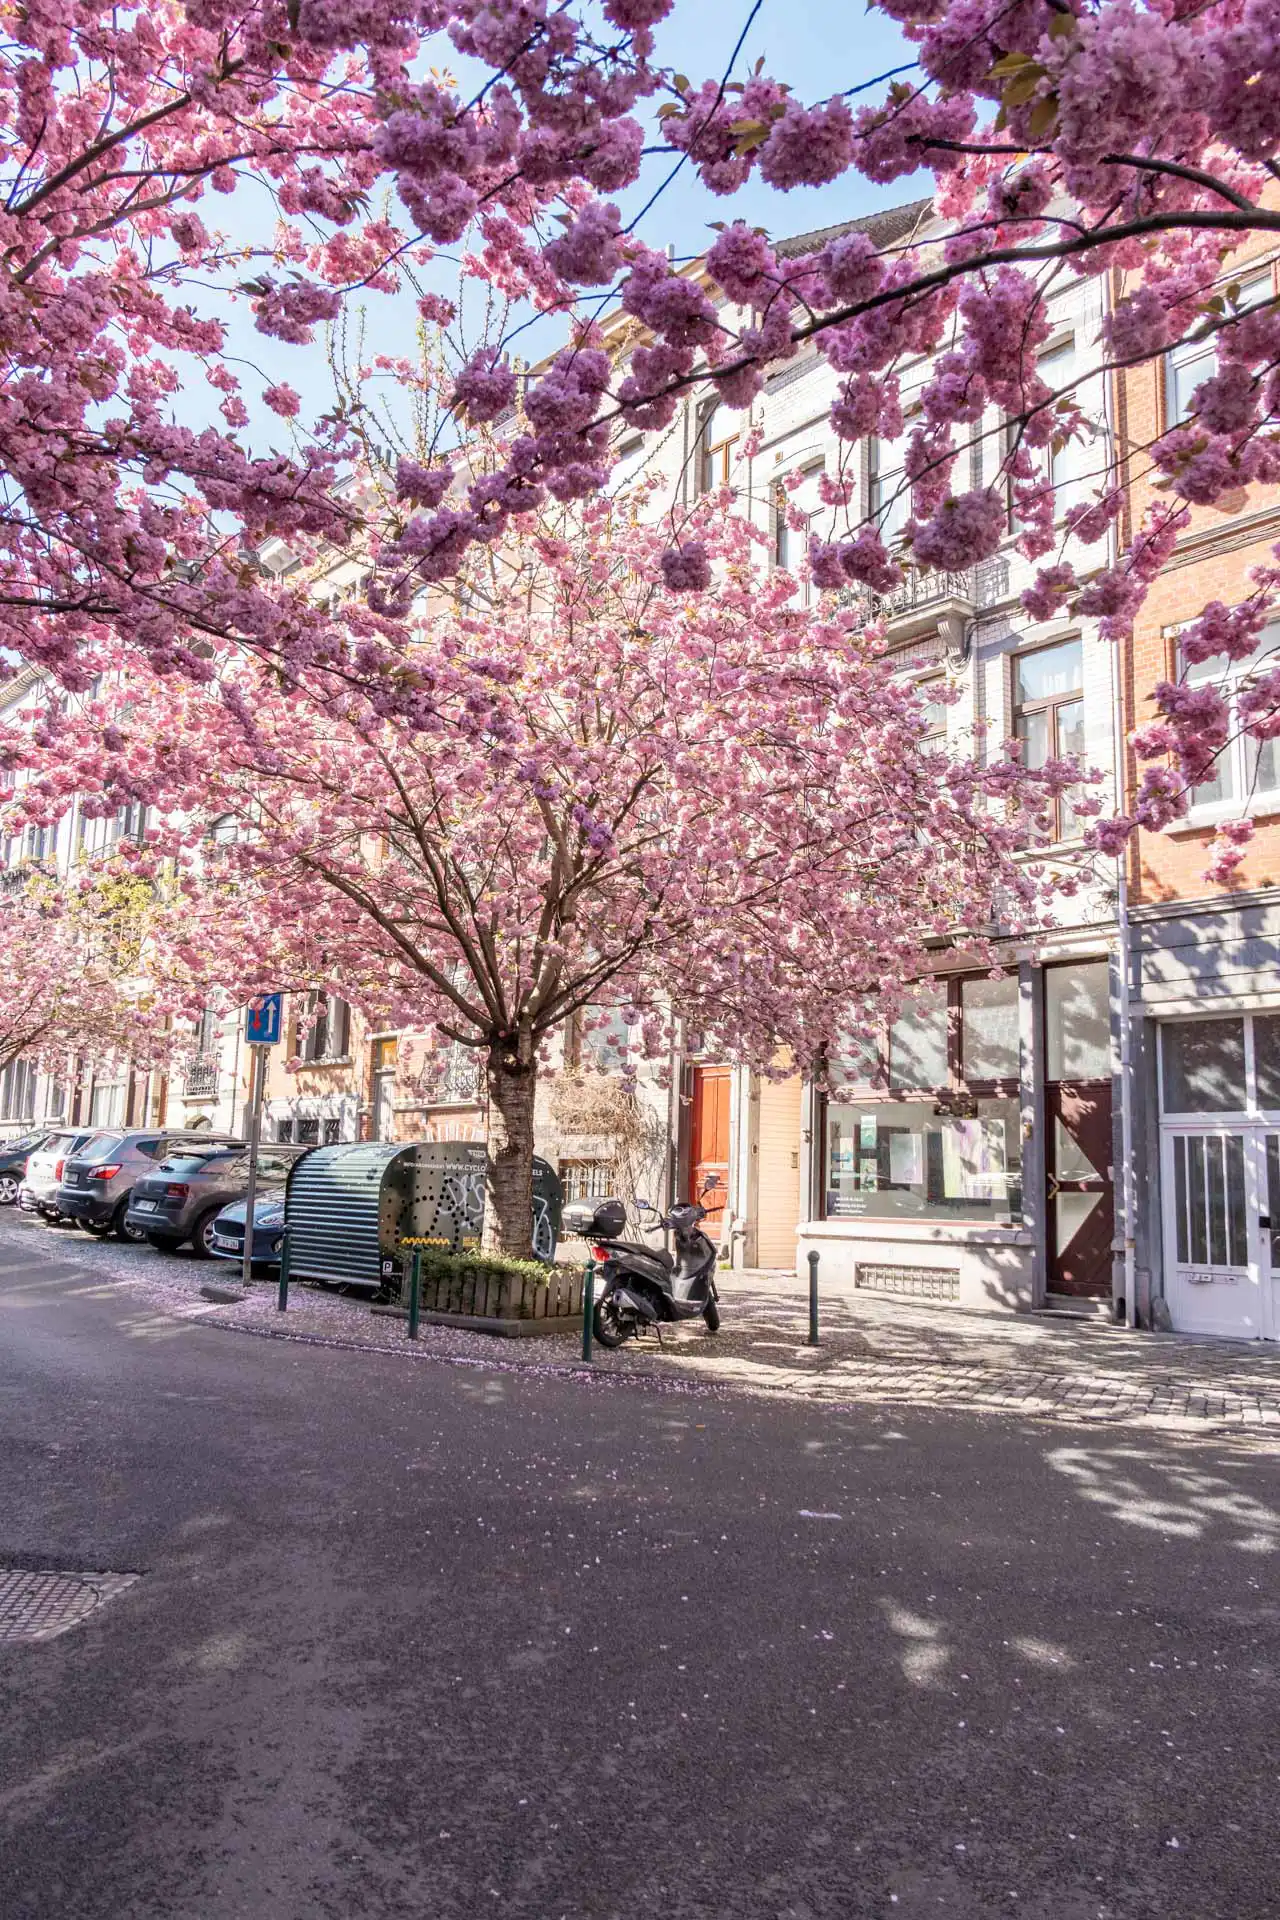 Cerisiers du Japon en fleurs devant des maisons bruxelloises